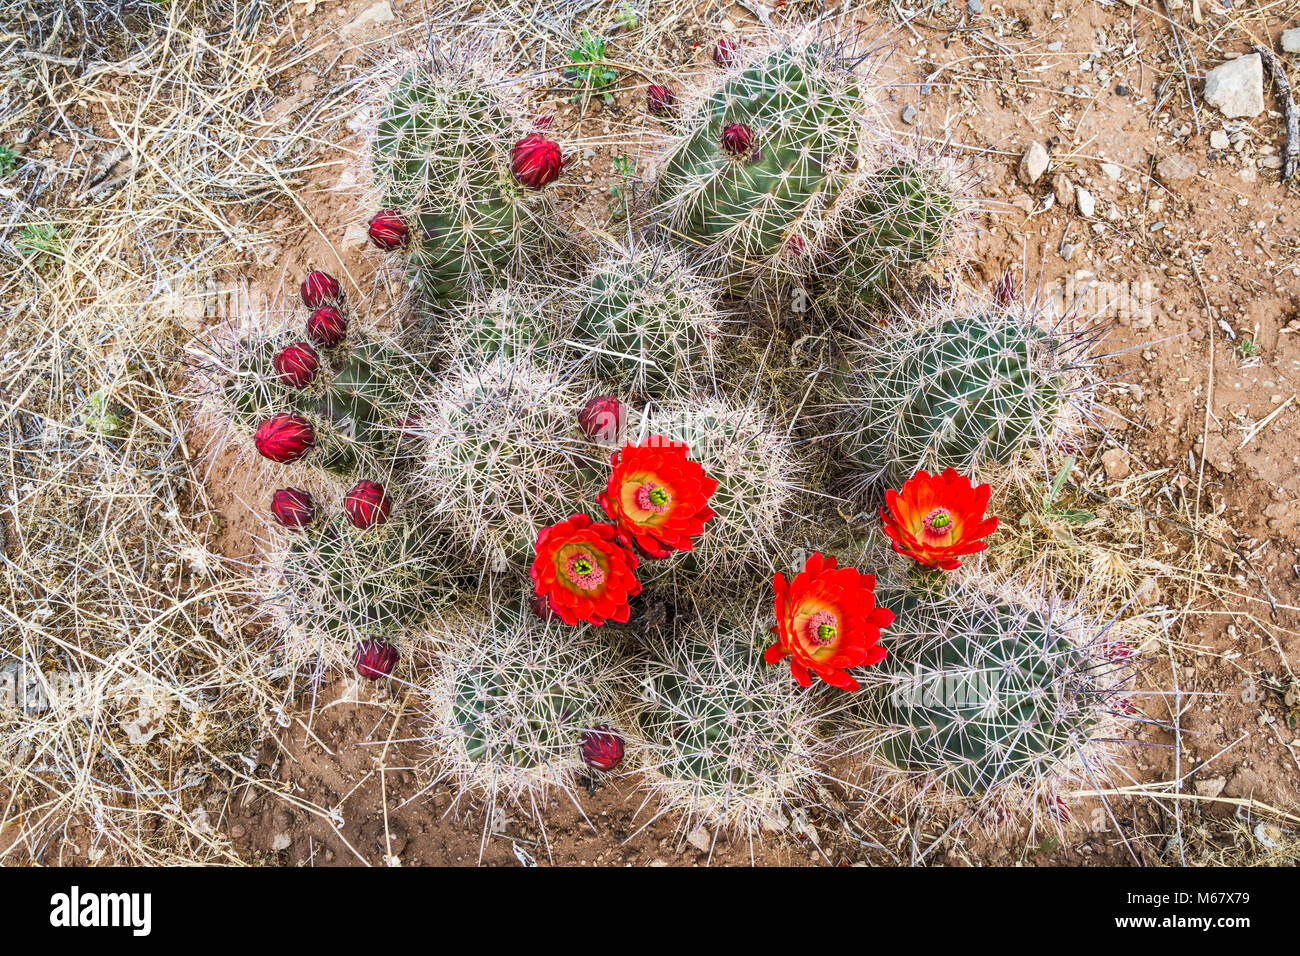 Claret Cup Kaktus (Echinocereus triglochidiatus) in voller Blüte, Hueco Tanks State Park und historischen Ort, Chihuahuan Wüste, in der Nähe von El Paso, Texas, USA Stockfoto